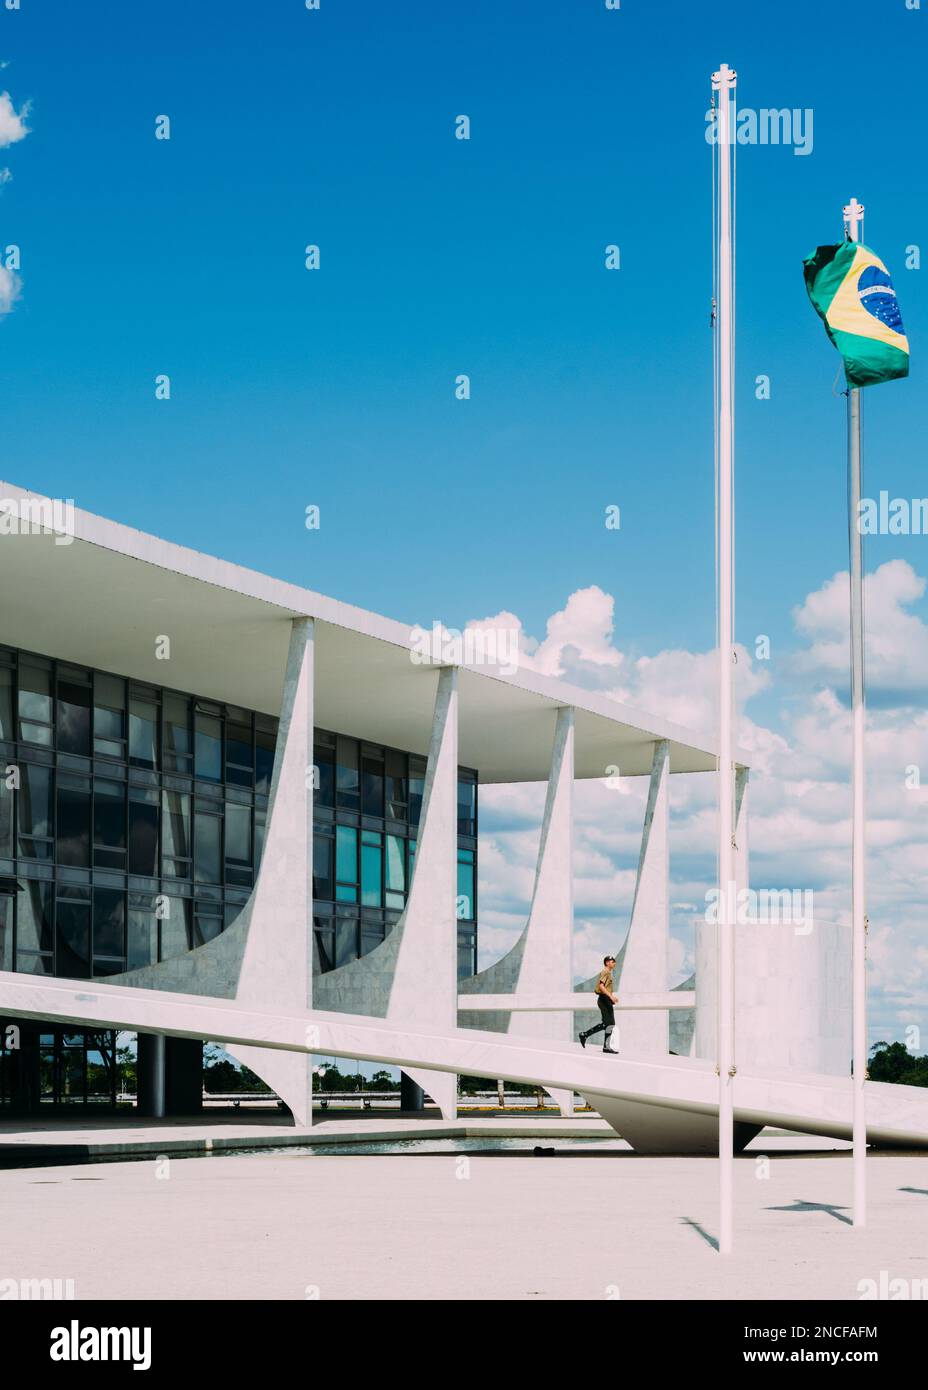 Brasilia, Brésil - 13 février 2023 : soldat sur la place des trois puissances à Brasilia, où se trouvent les bâtiments emblématiques de la capitale fédérale du Brésil Banque D'Images